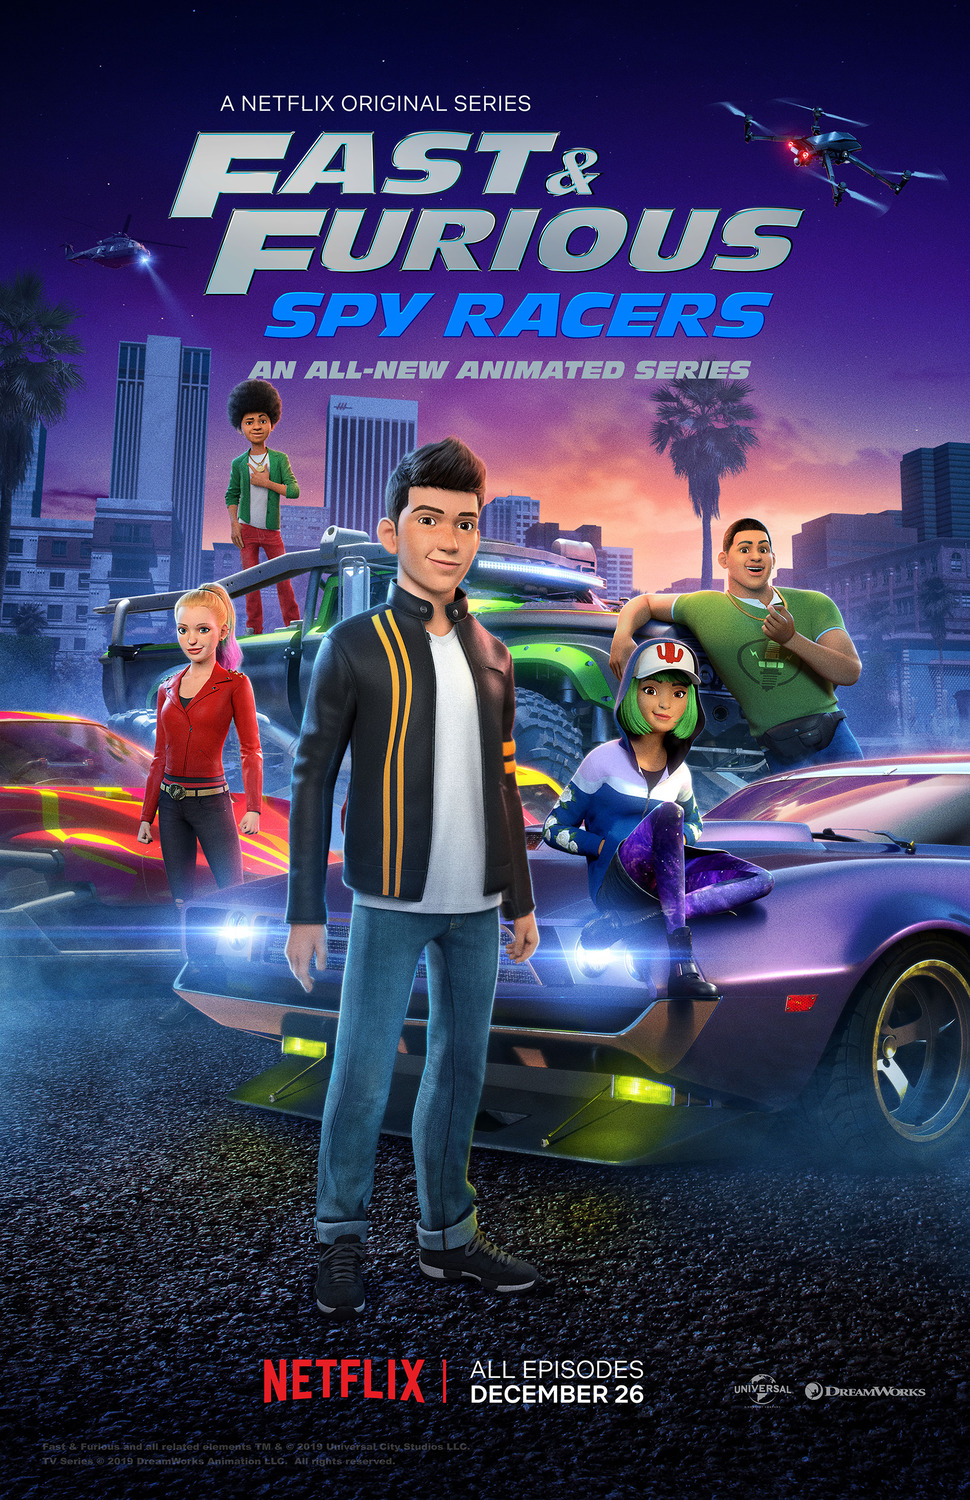 ดูหนังออนไลน์ Fast & Furious Spy Racers Season 6 EP1 เร็วแรงทะลุนรก ซิ่งสยบโลก ซีซั่น 6 ตอนที่ 1